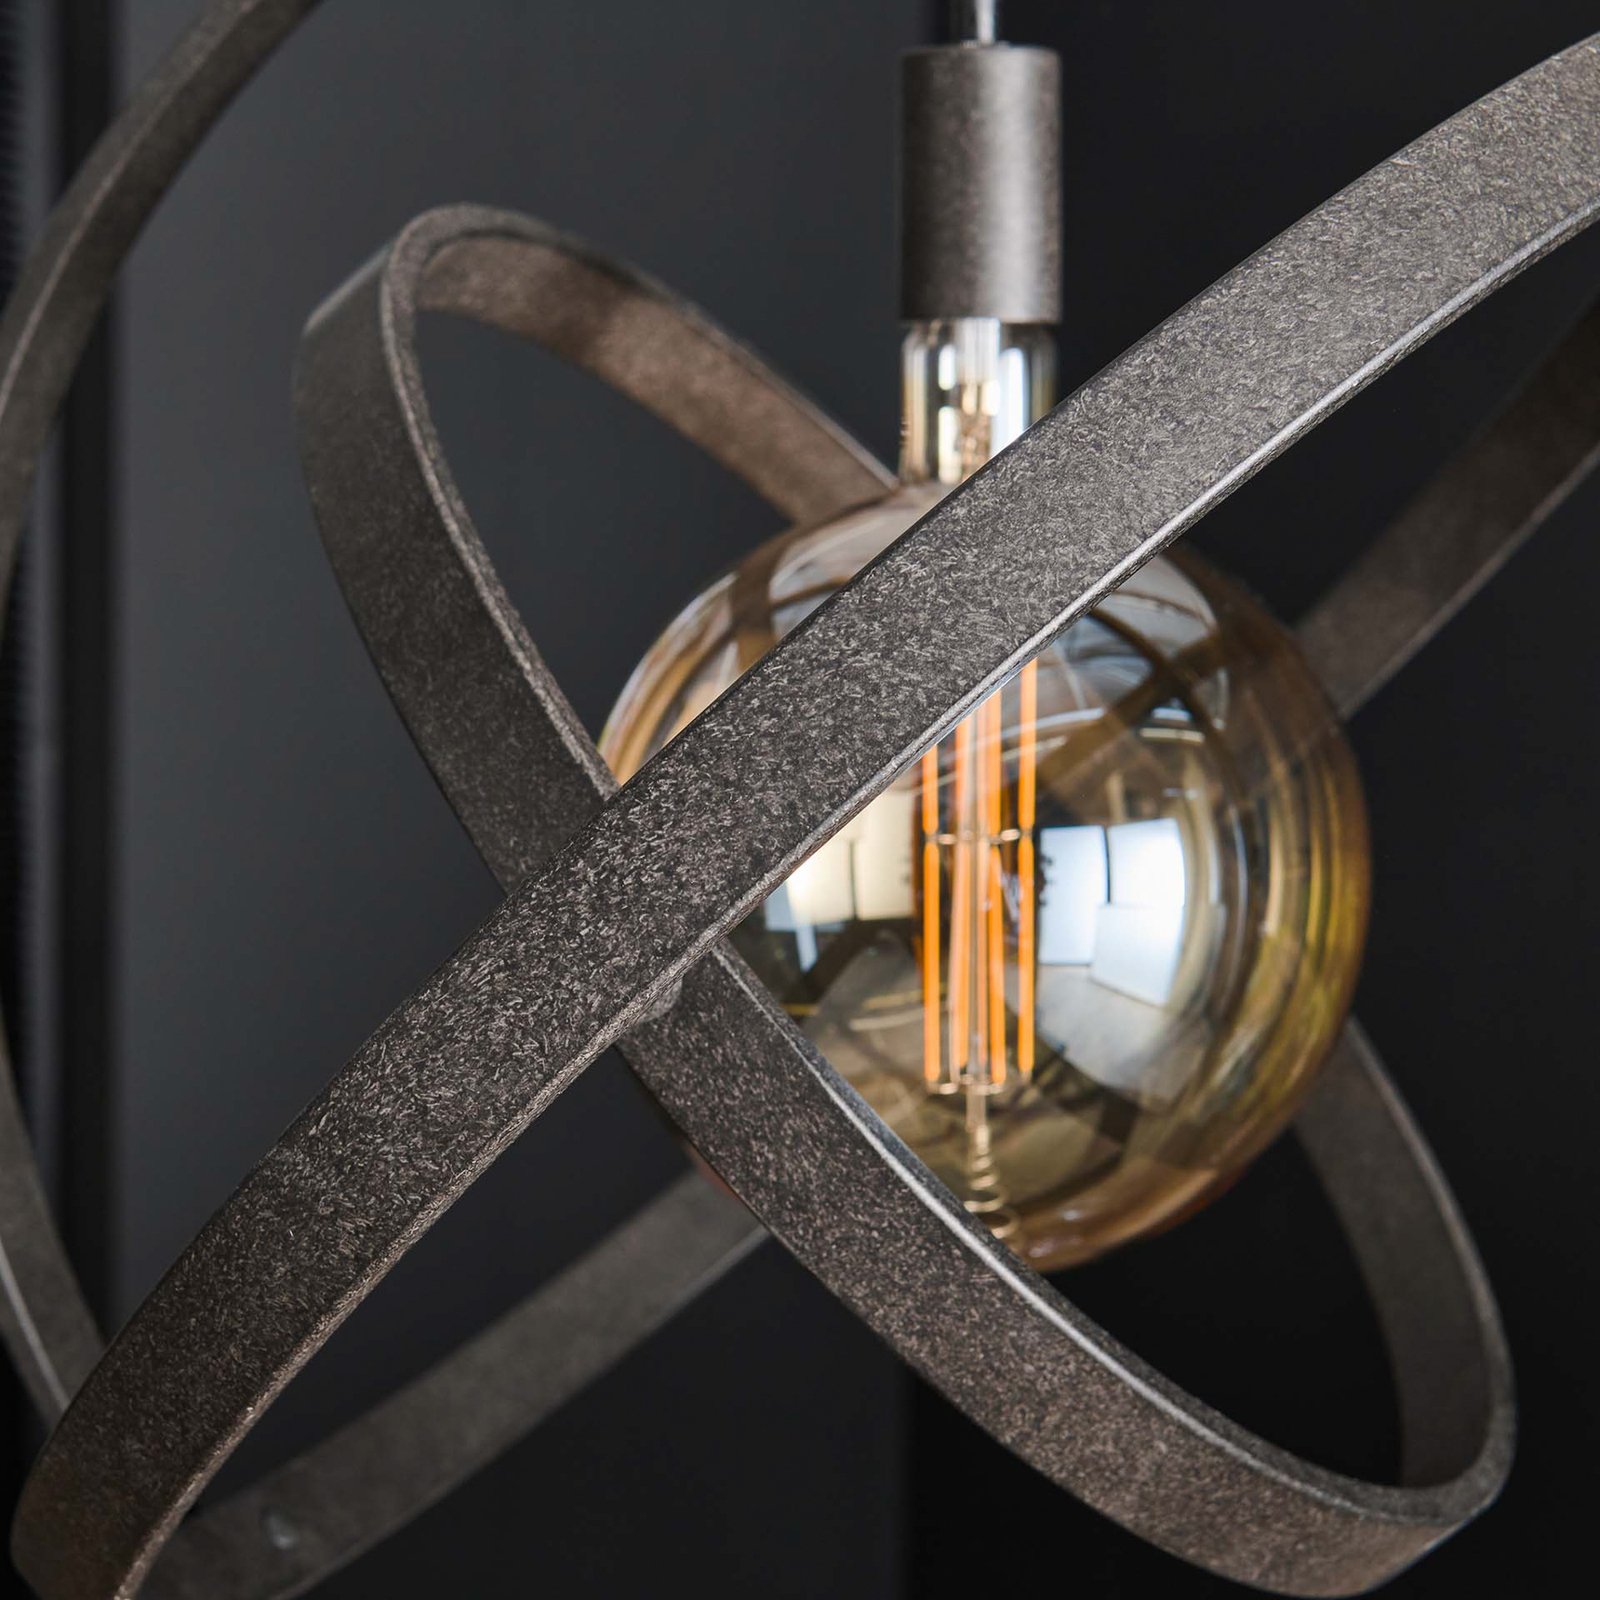 Lámpara colgante Orbit con 3 anillos, 1 luz, negro